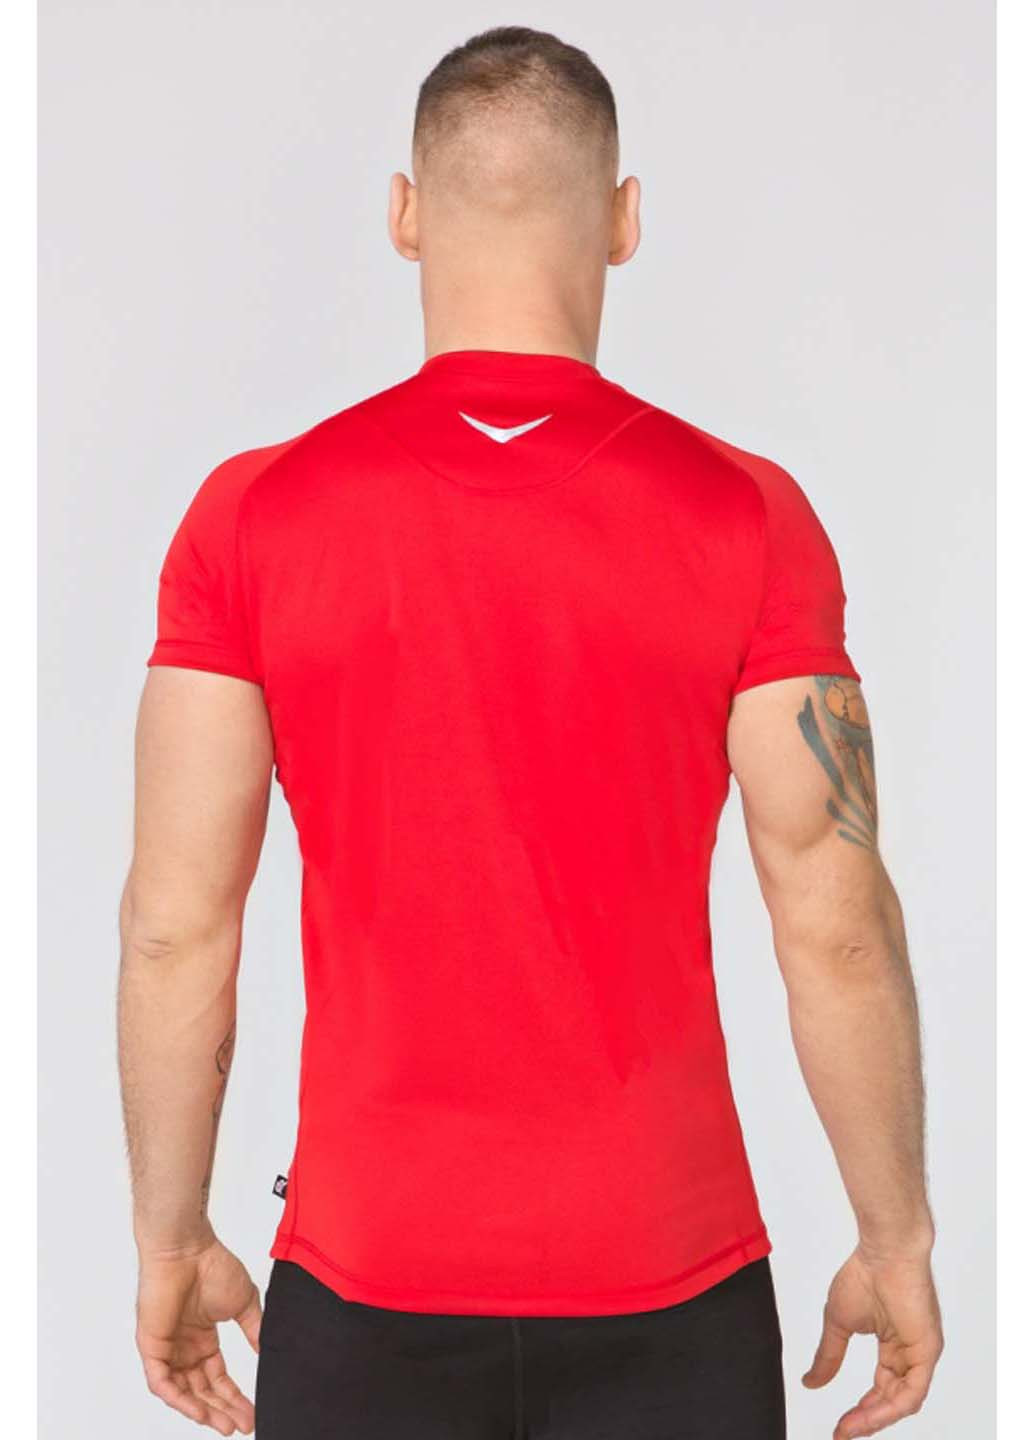 Спортивная футболка Radical однотонная красная спортивная полиэстер